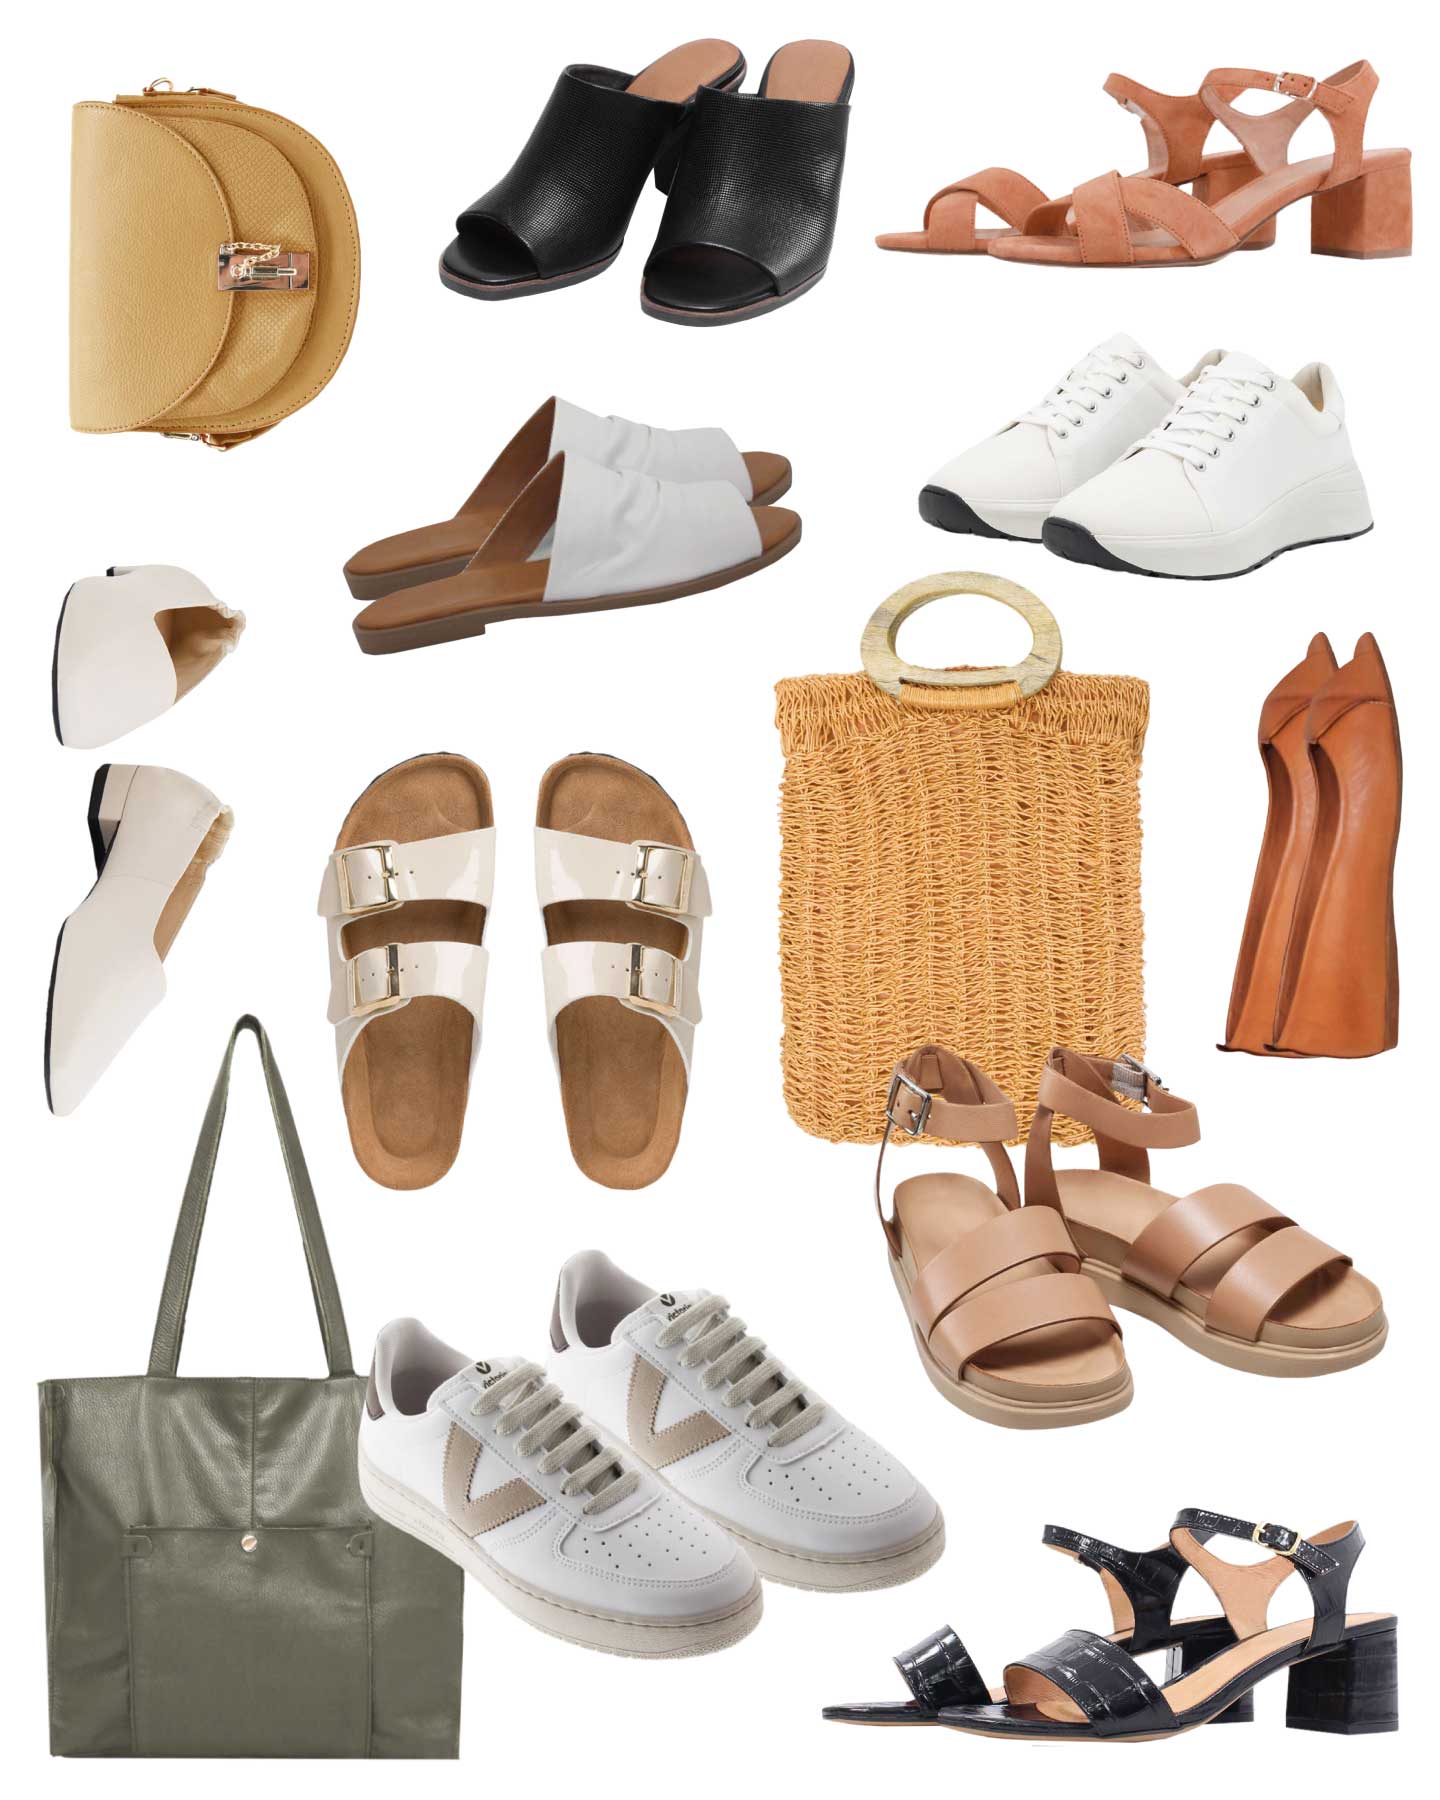 Sandales femmes : quelles chaussures pour l'été 2022 ?